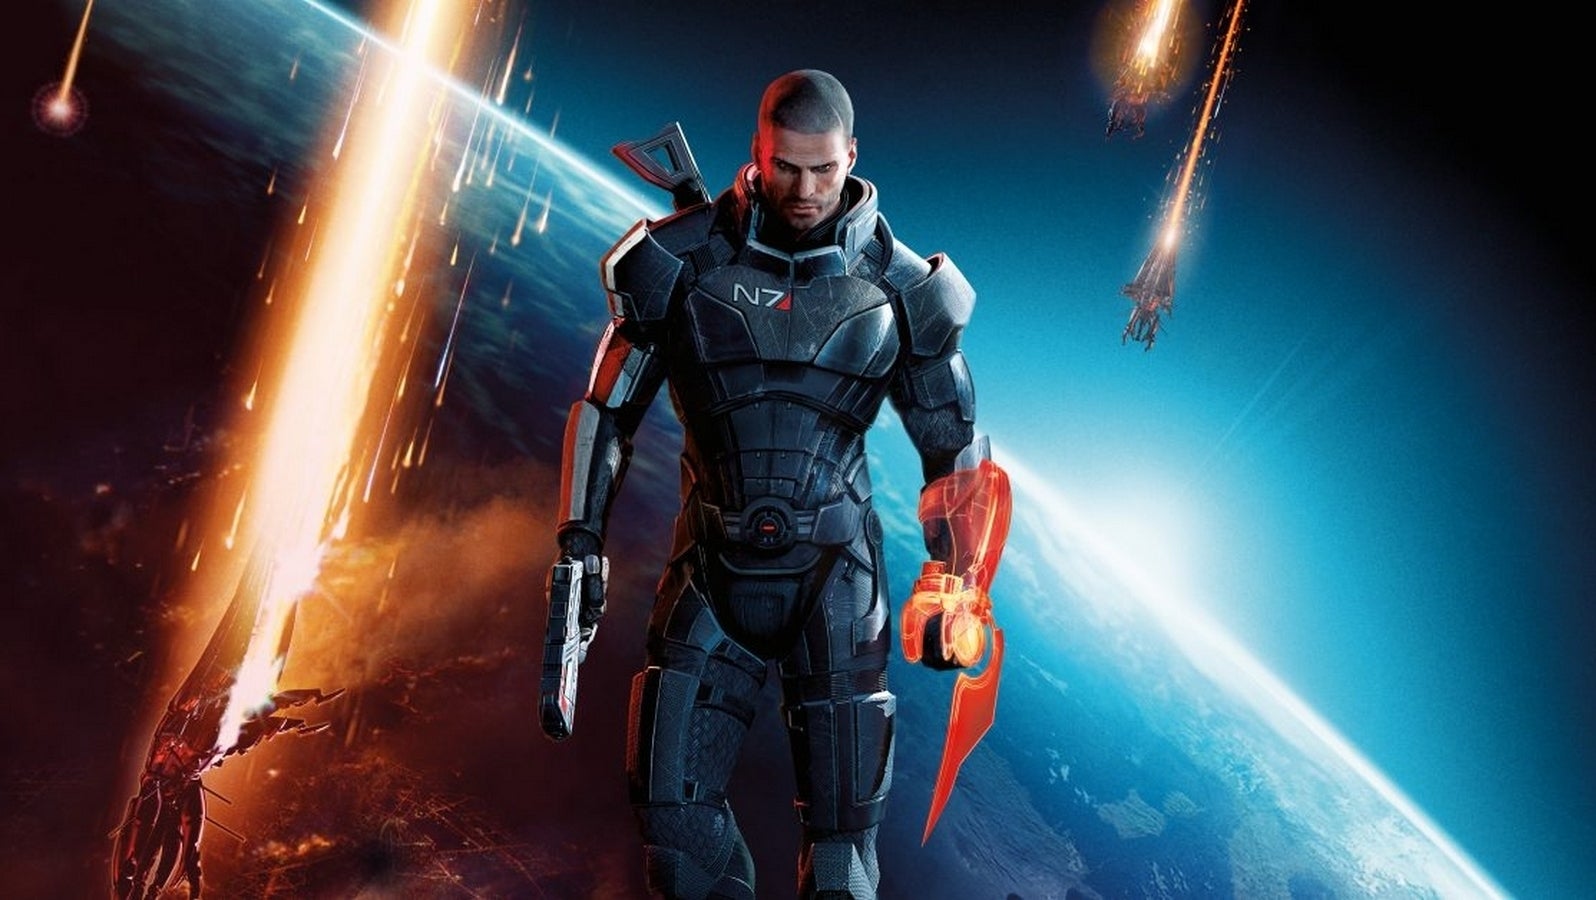 Bilder zu Neues Artbook zu Mass Effect befeuert Remaster-Spekulationen